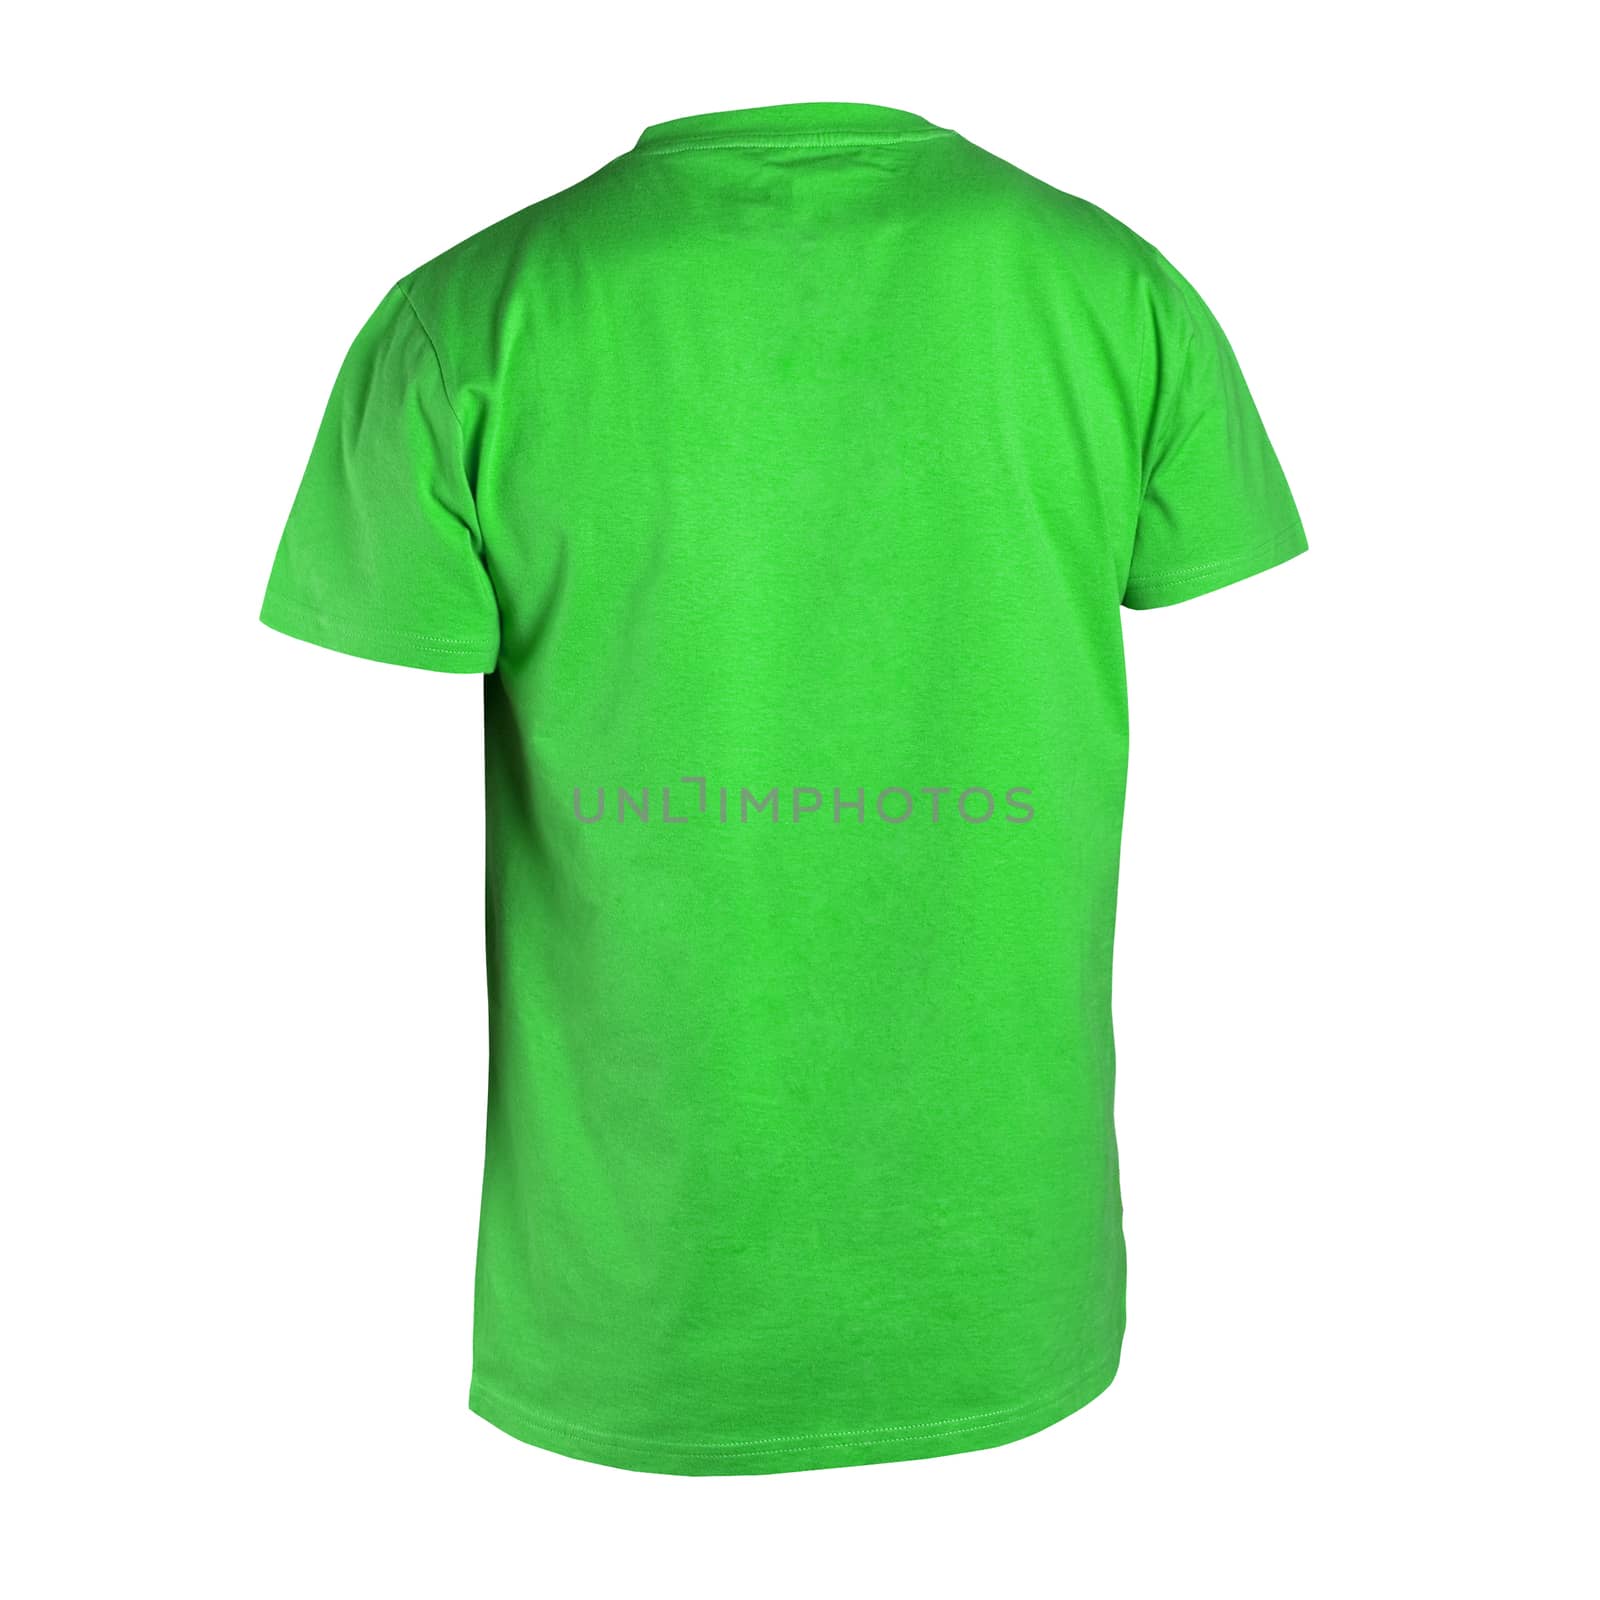 Green man t-shirt  by ozaiachin